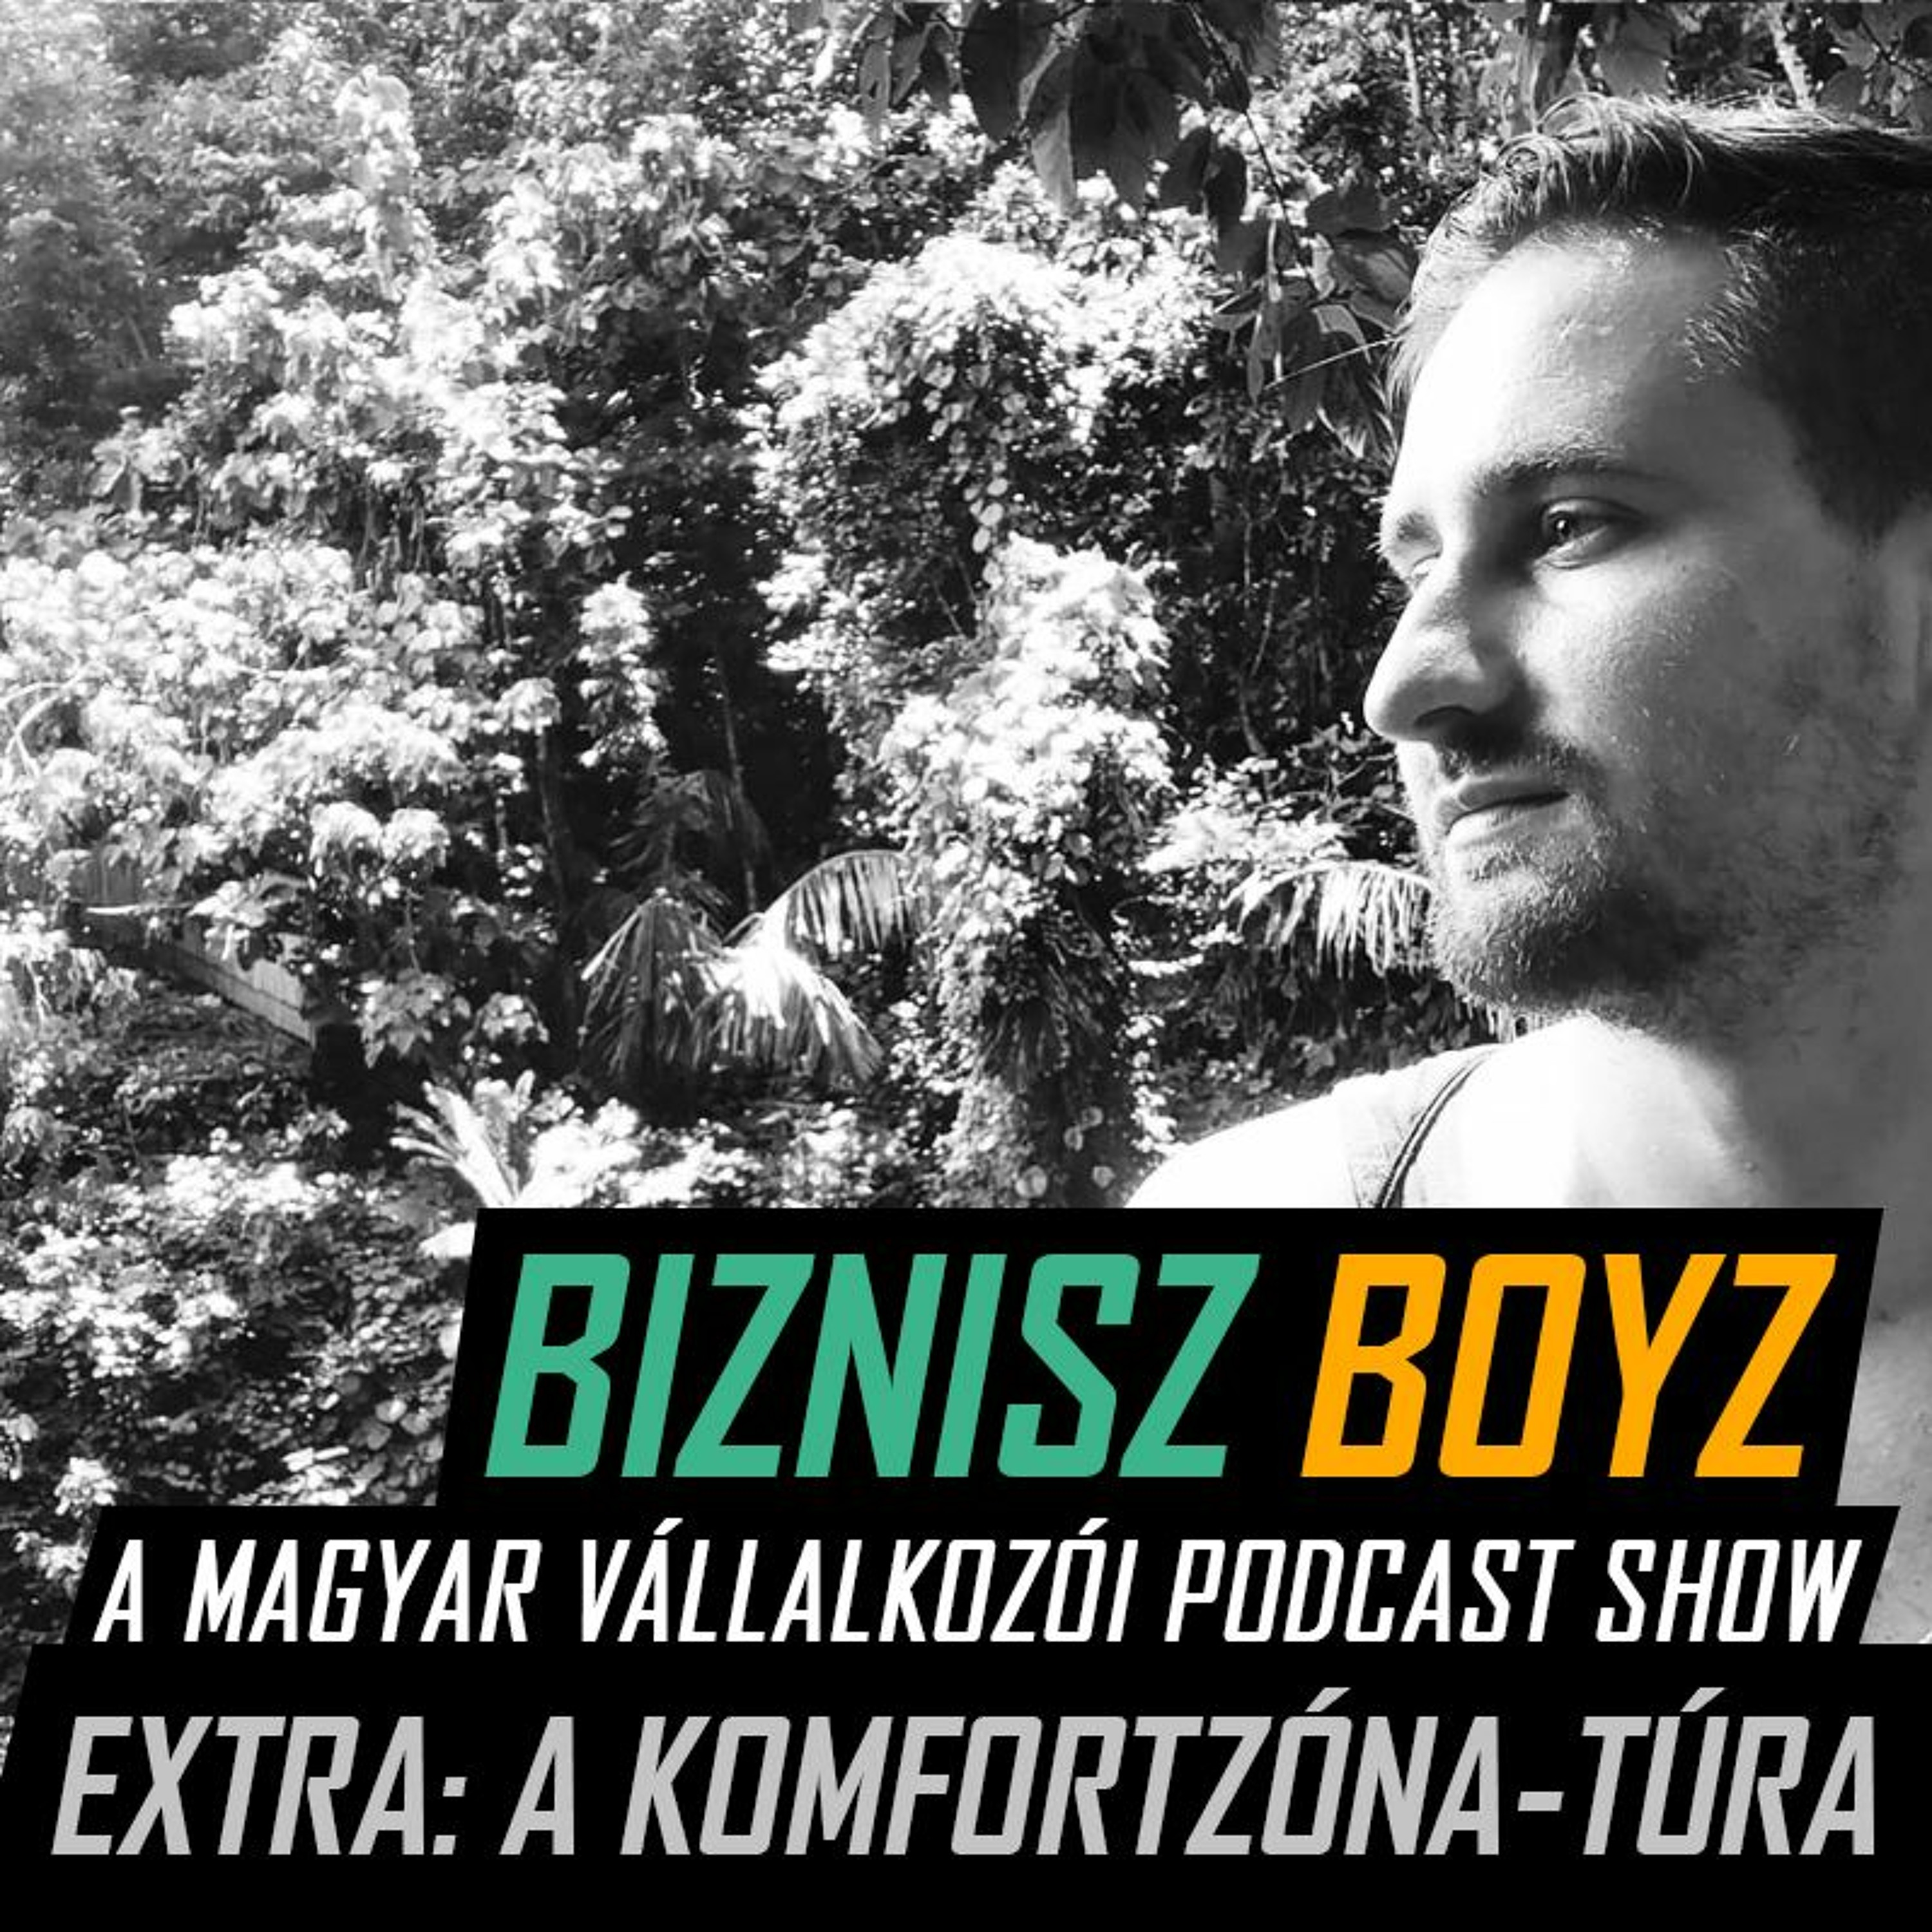 Extra - Utazás a komfortzónán túlra - Bali élménybeszámoló Aditól | Biznisz Boyz Podcast